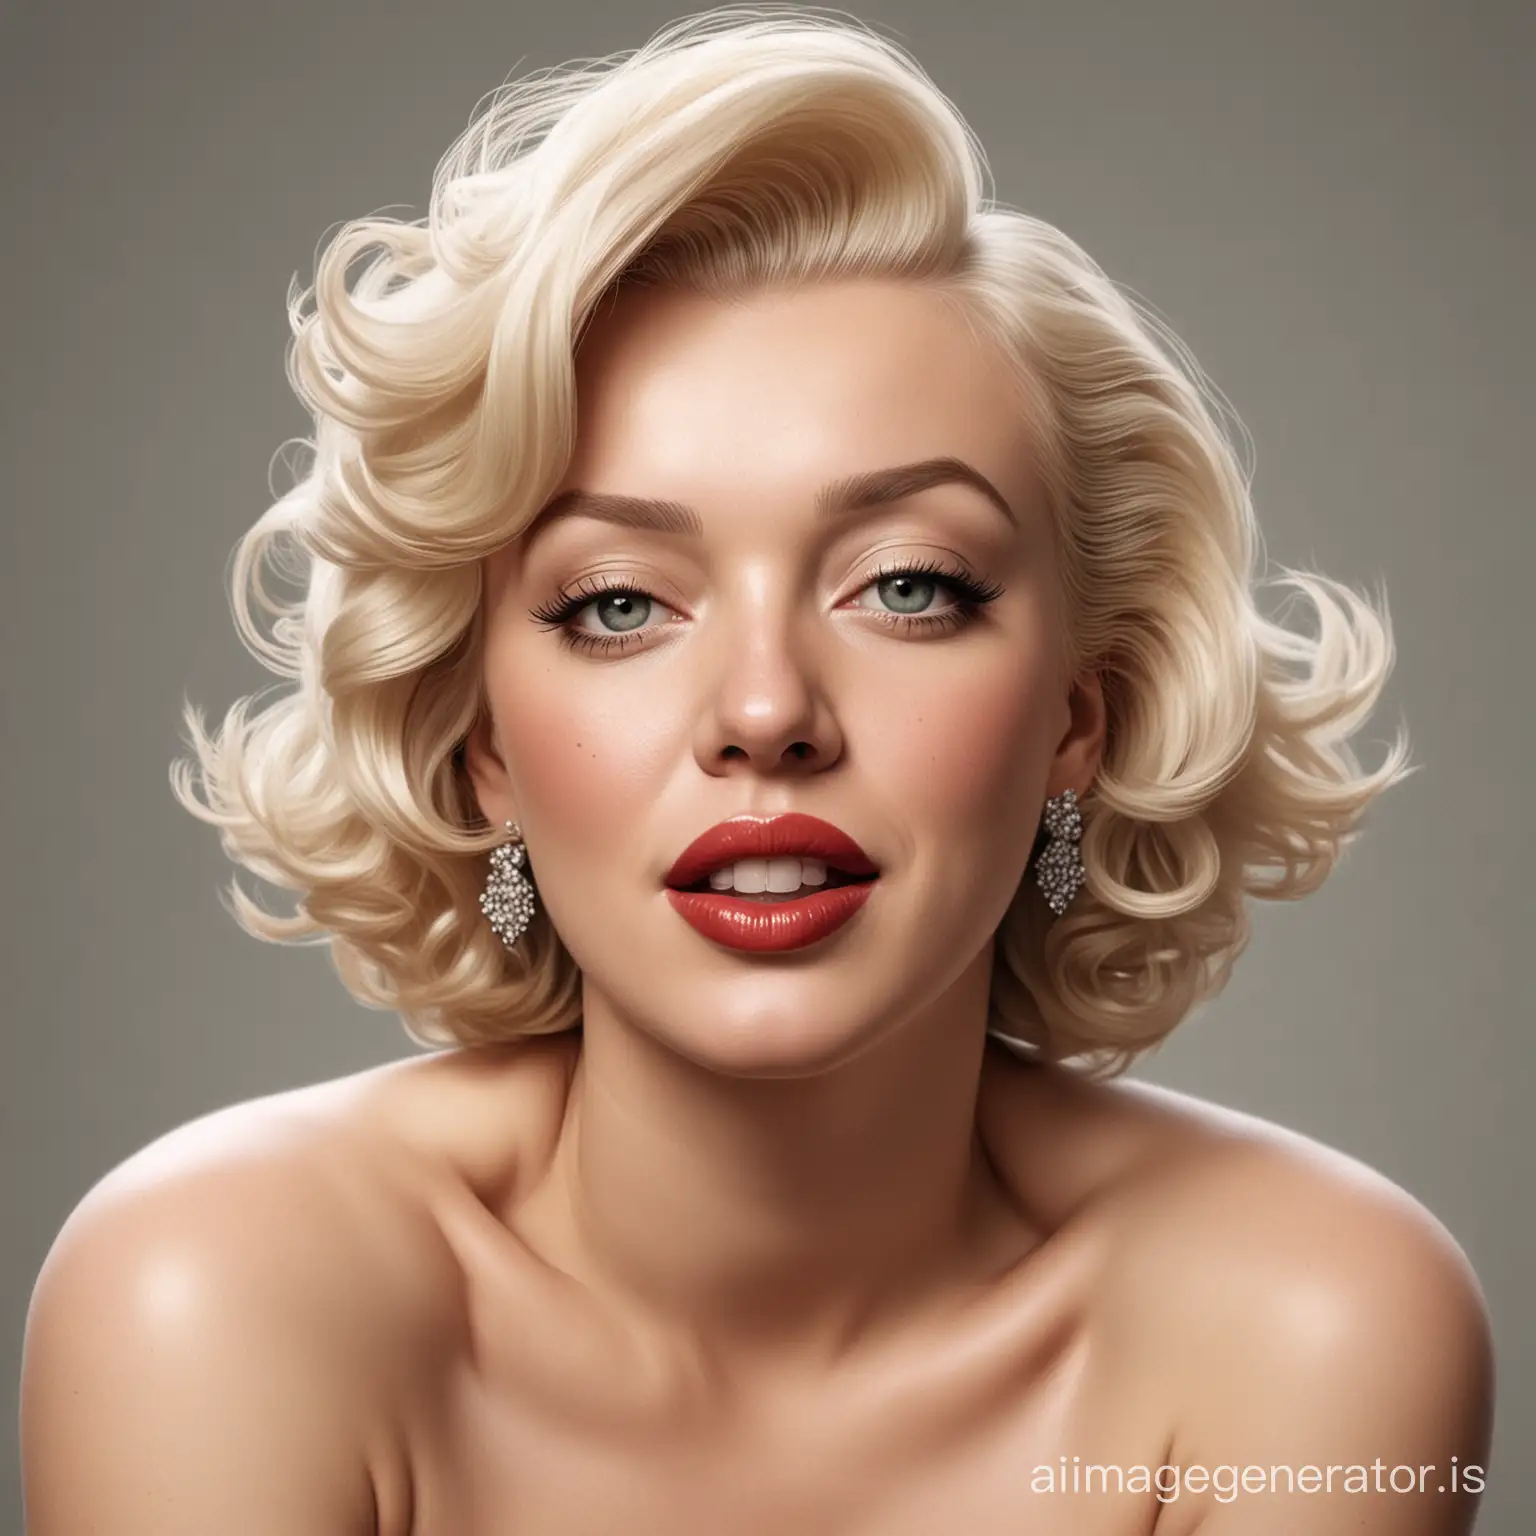 Marilyn-Monroe-Realistic-Portrait-Artwork-in-Monochrome